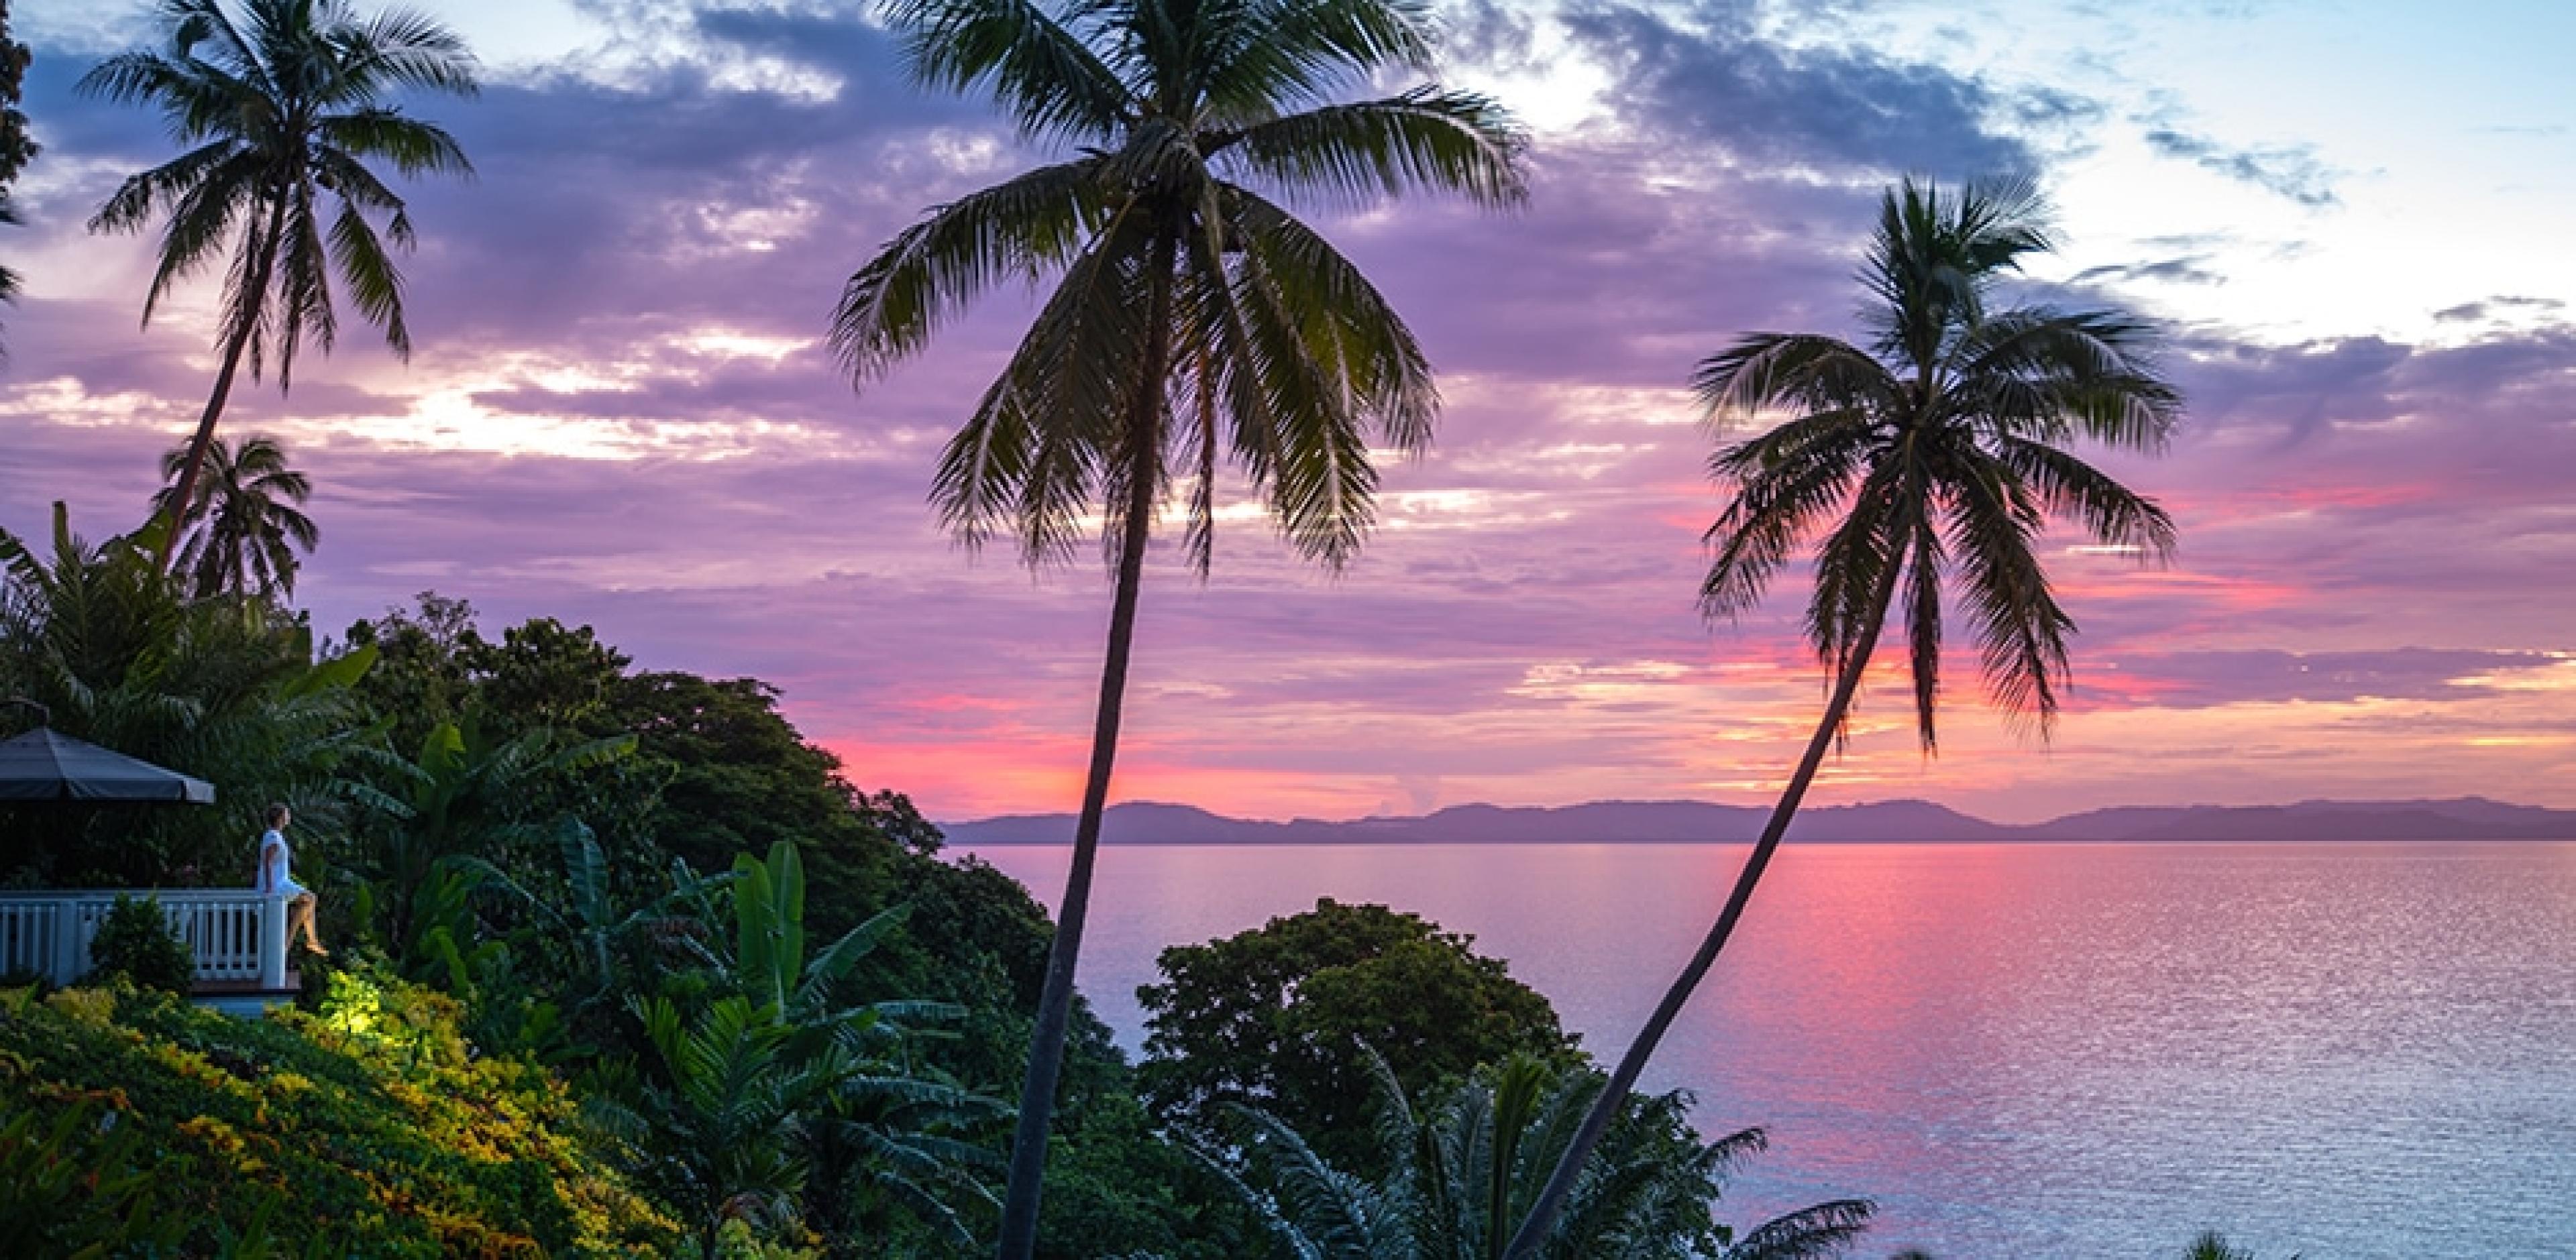 sunset over fiji island